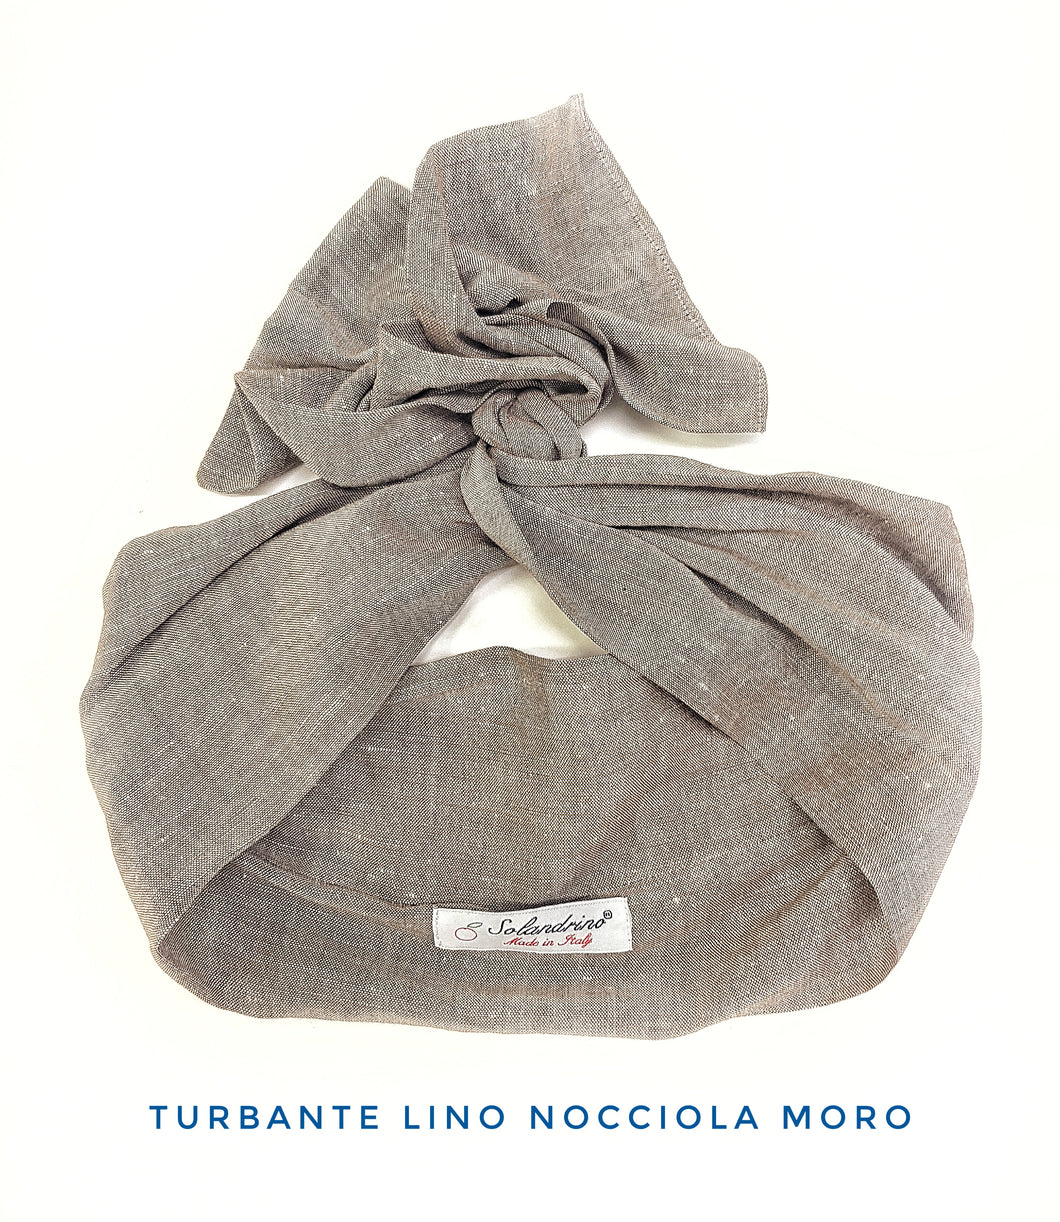 Turbante nocciola moro in lino made in Italy fascia capelli hairband